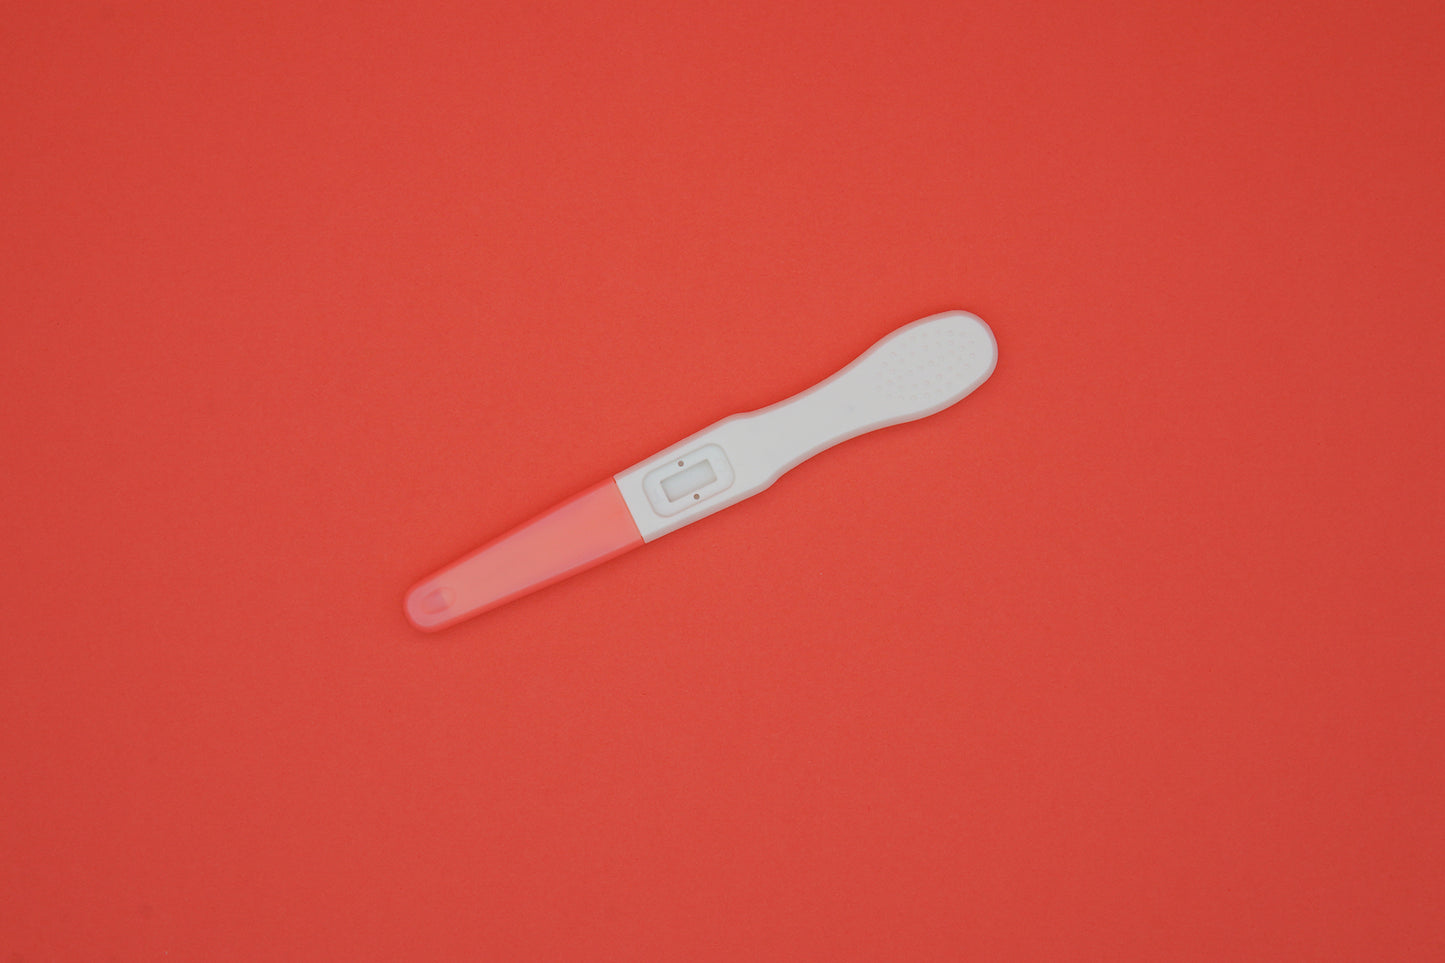 twoplus Fertility Ovulation Test Kit capped